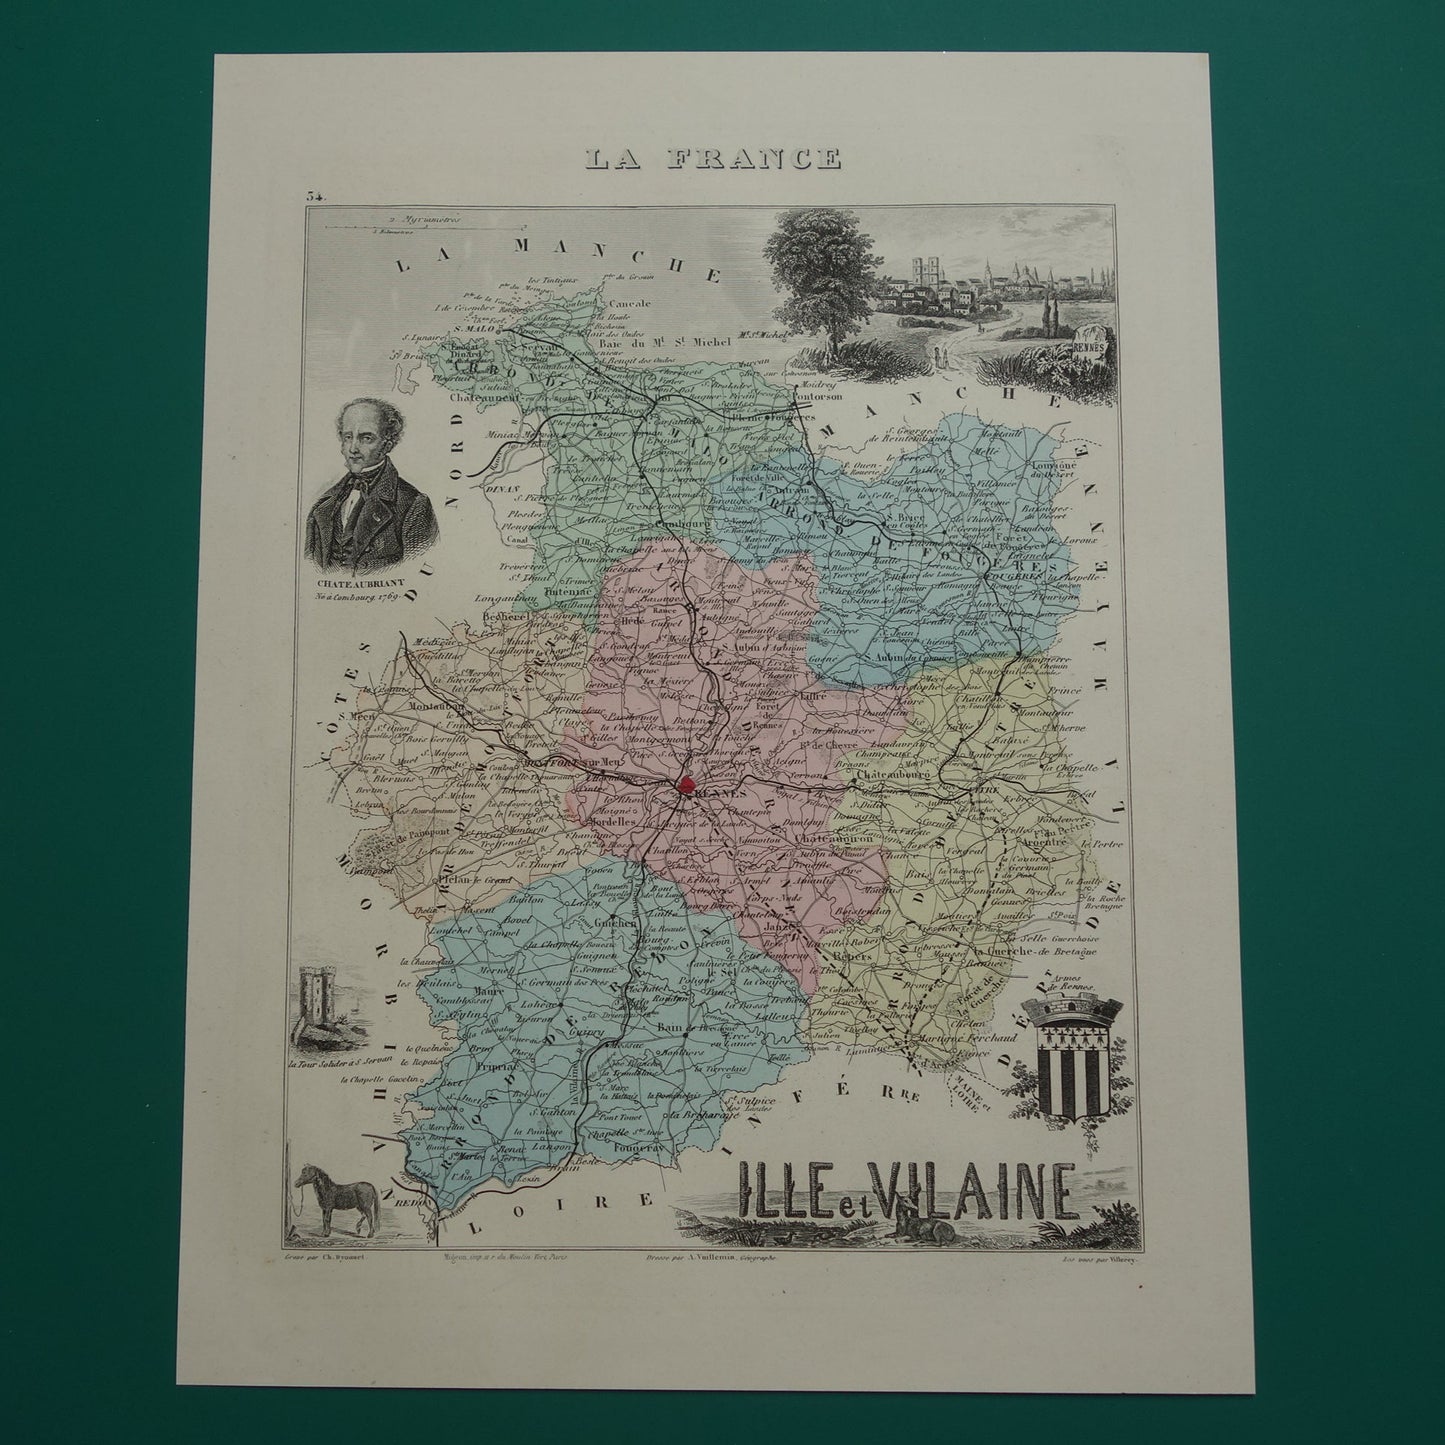 Ille et Vilaine departement Frankrijk oude kaart 1880 originele antieke landkaart Rennes historische kaarten